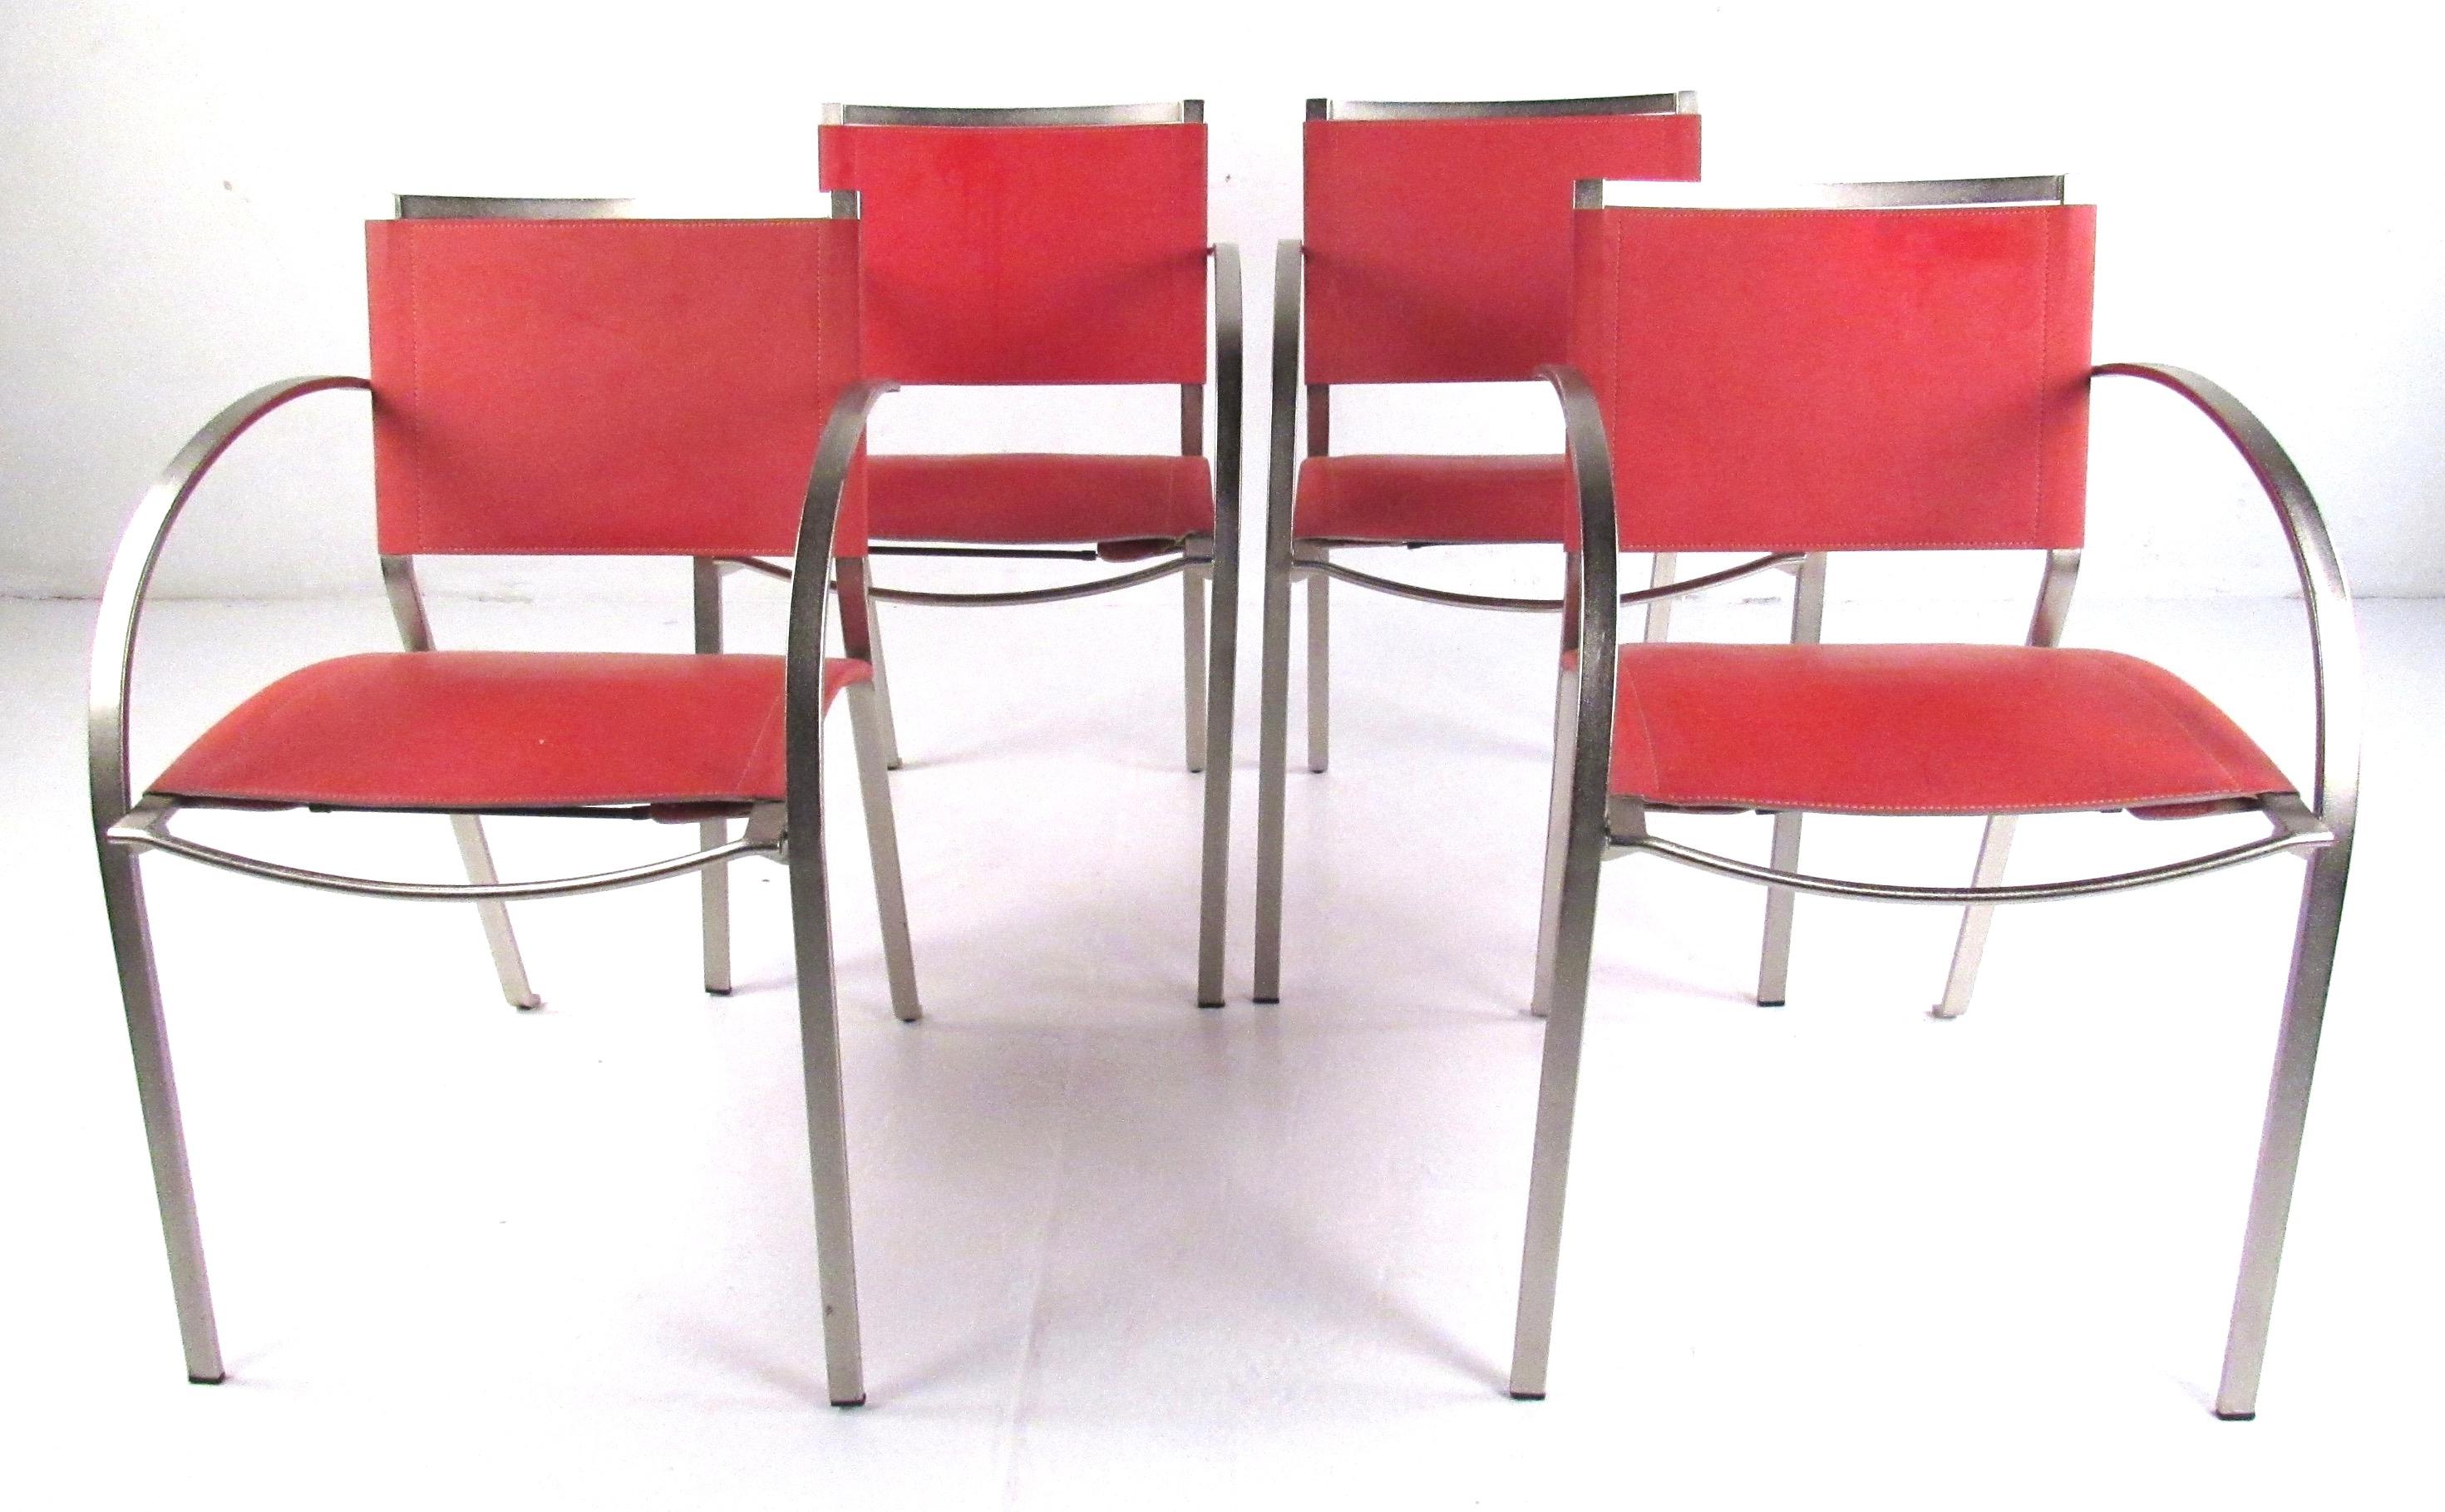 Ensemble élégant de quatre fauteuils en cuir et en métal qui s'harmoniseront avec tout décor moderne ou midcentury. 
Veuillez confirmer la localisation de l'article (NY ou NJ) auprès du revendeur.